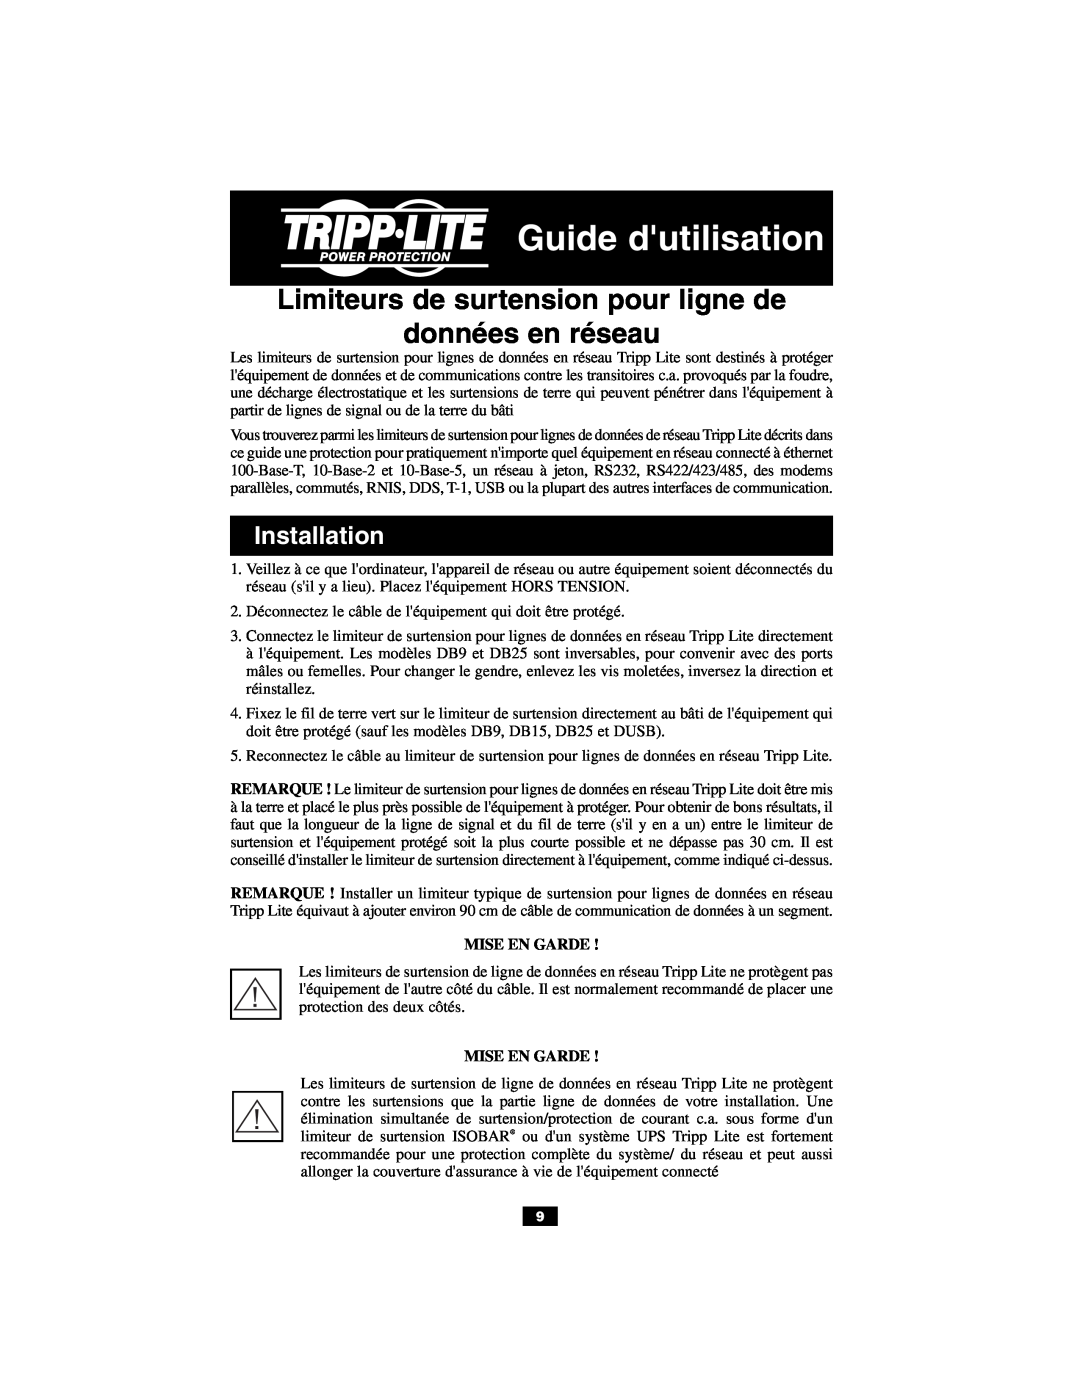 Tripp Lite DUSB Guide dutilisation, Limiteurs de surtension pour ligne de données en réseau, Mise En Garde, Installation 